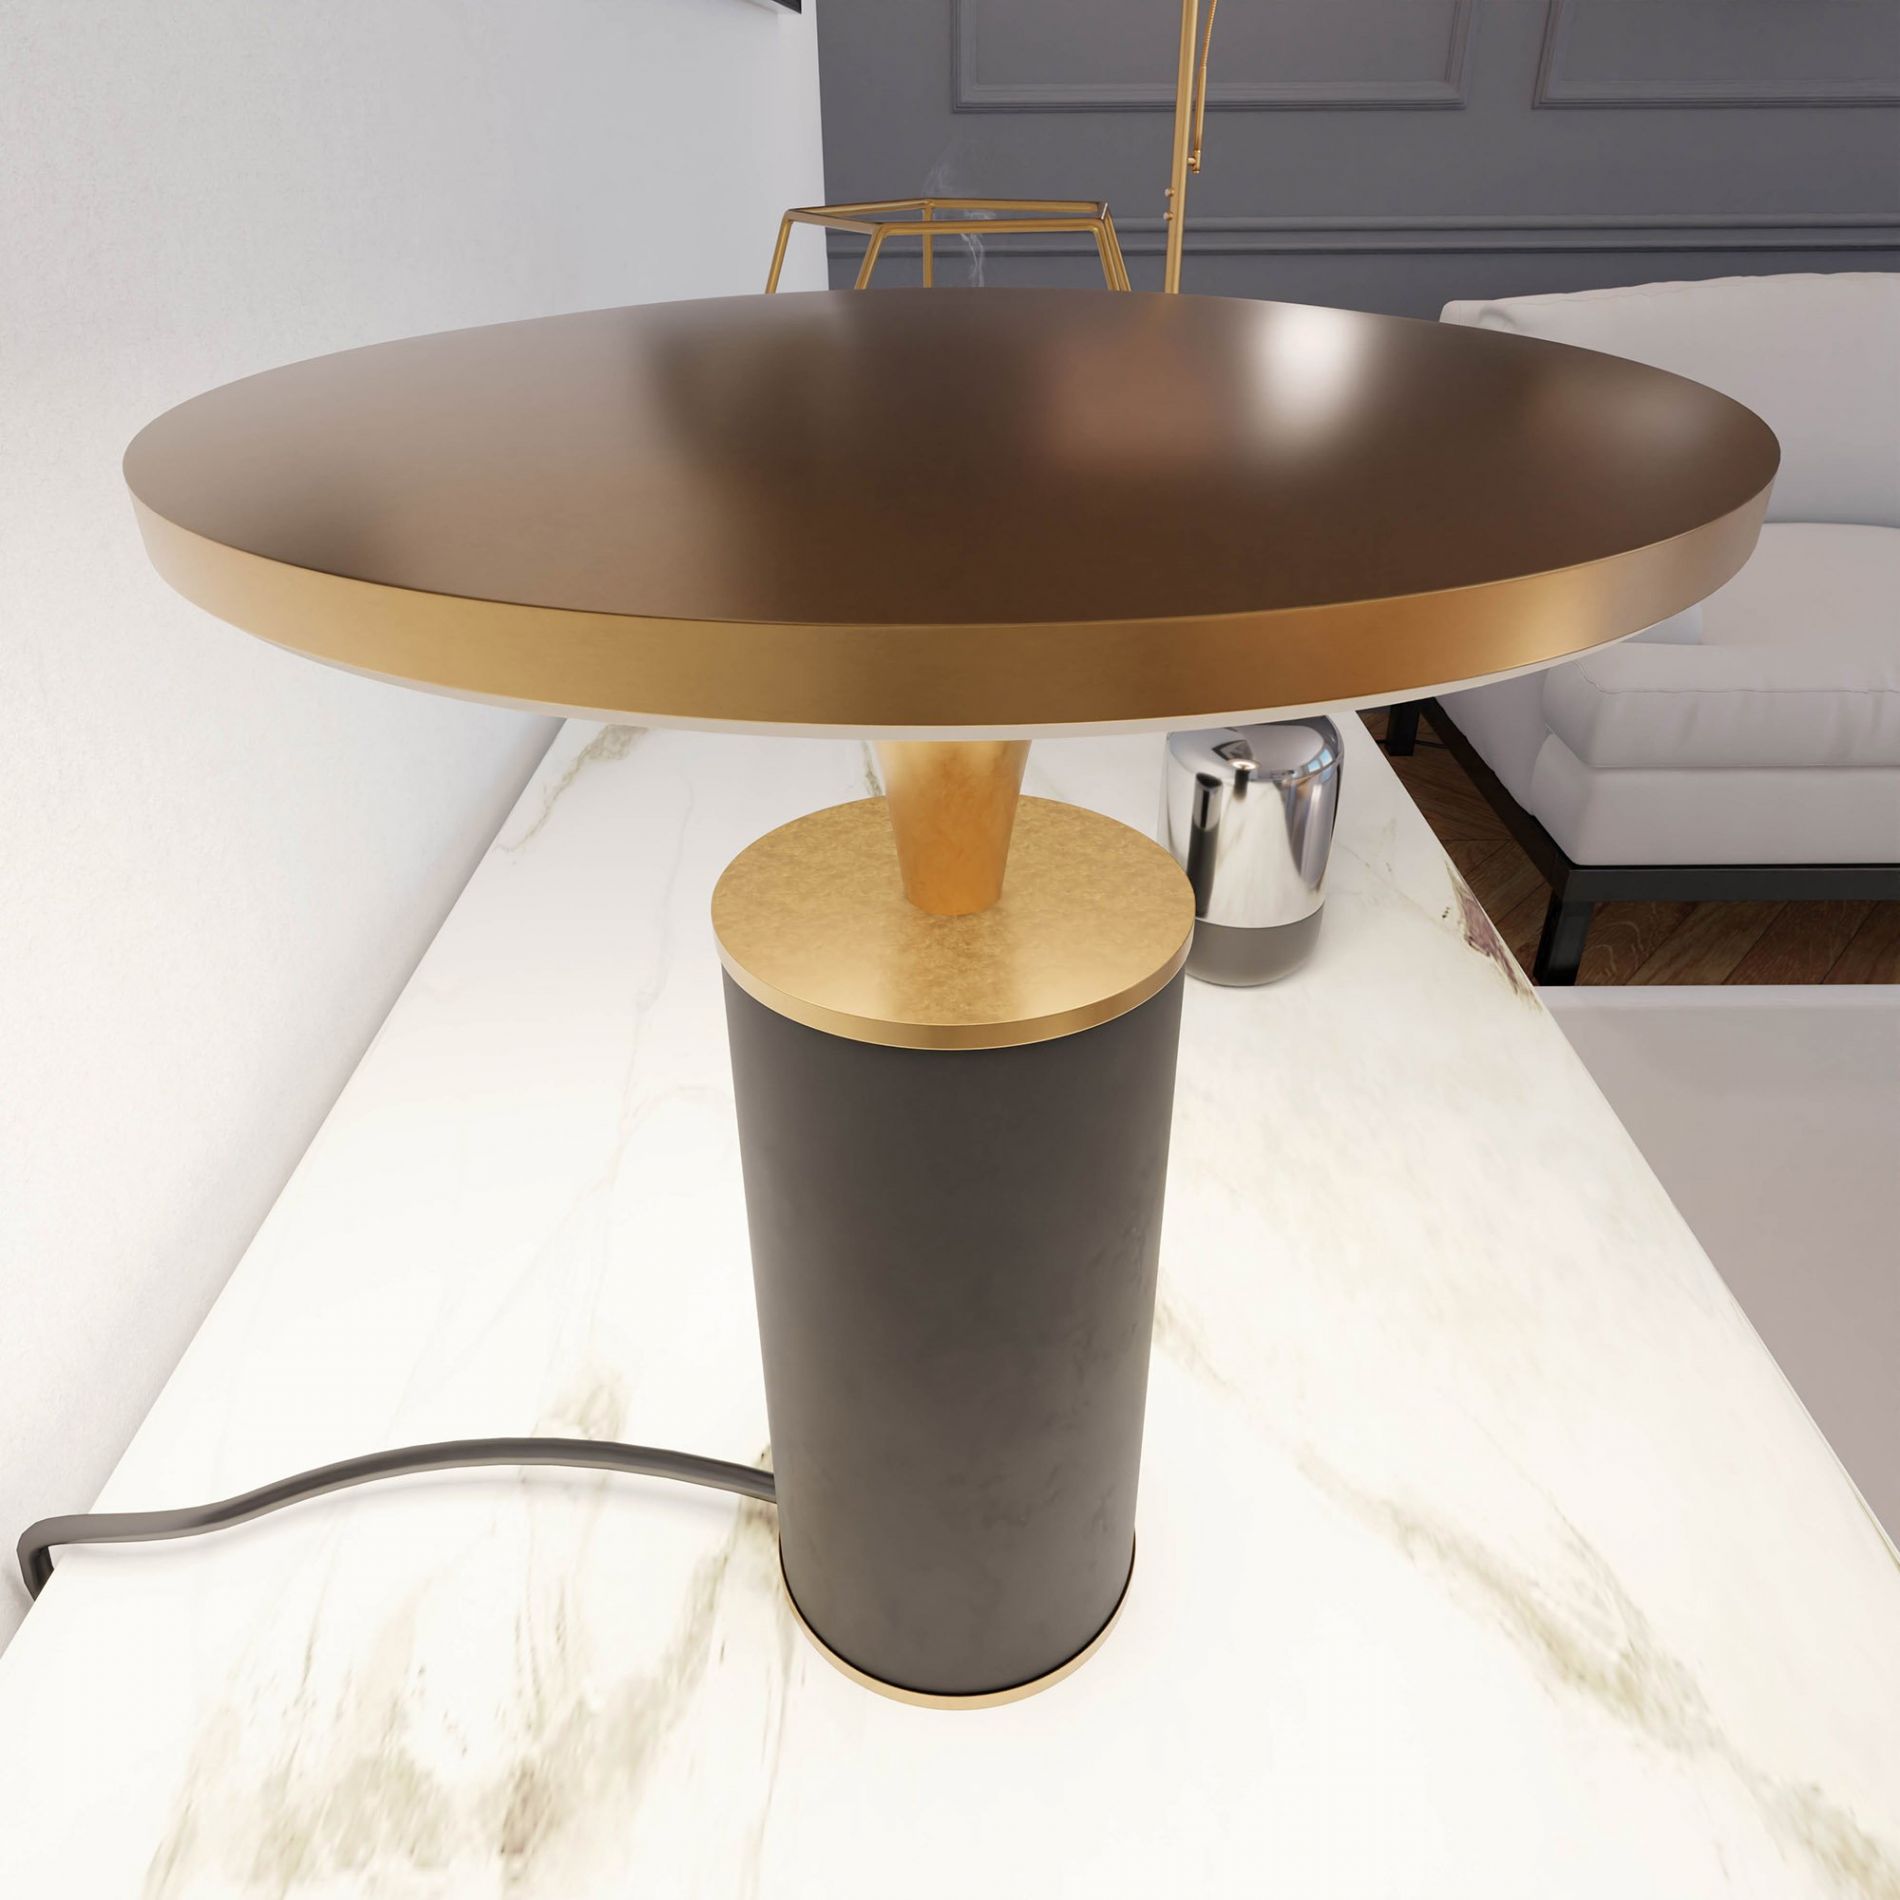 Lampe à poser LED DEEPLY (H24cm) en métal noir et doré